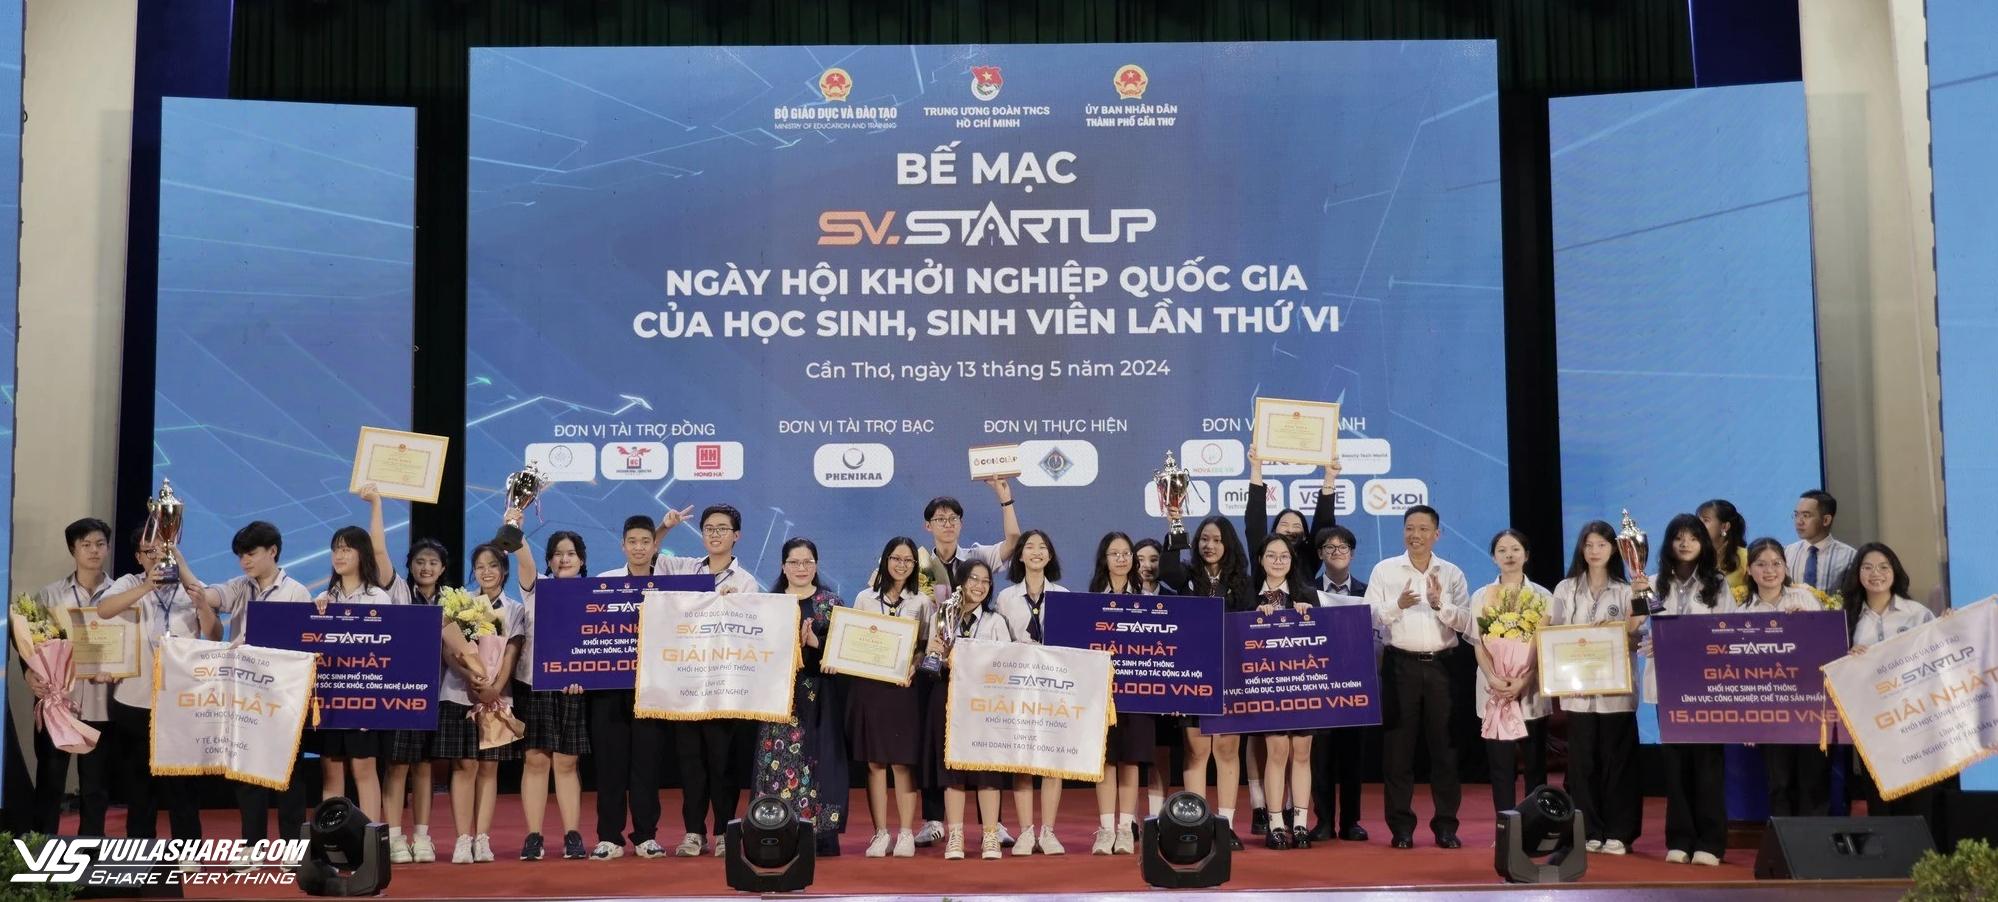 Học sinh đưa văn hóa, kiến trúc Việt vào trò chơi dân gian, giành giải quốc gia- Ảnh 5.